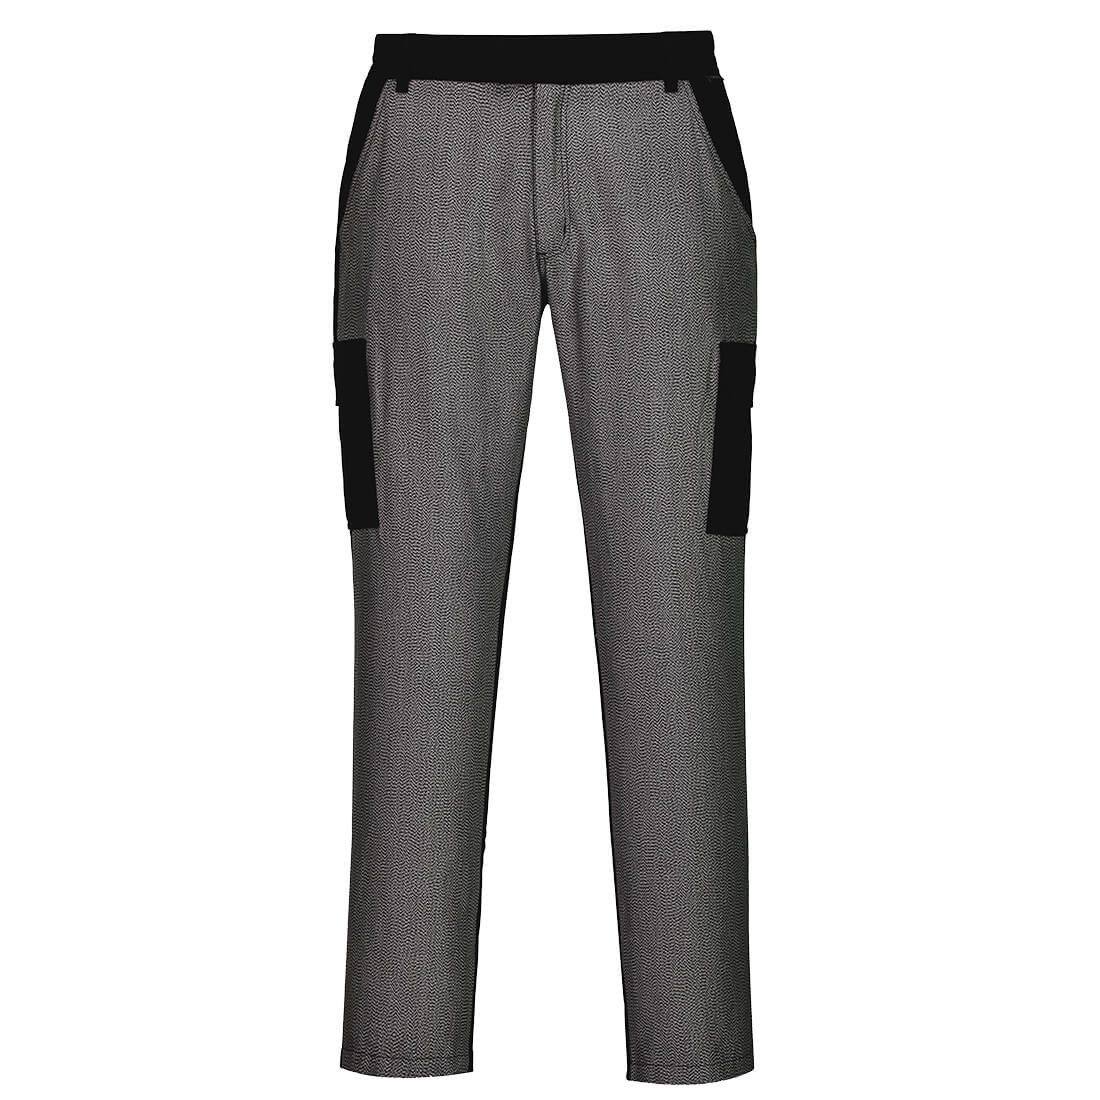 Pantalon Combat avec partie frontale résistant aux coupures - Les vêtements de protection